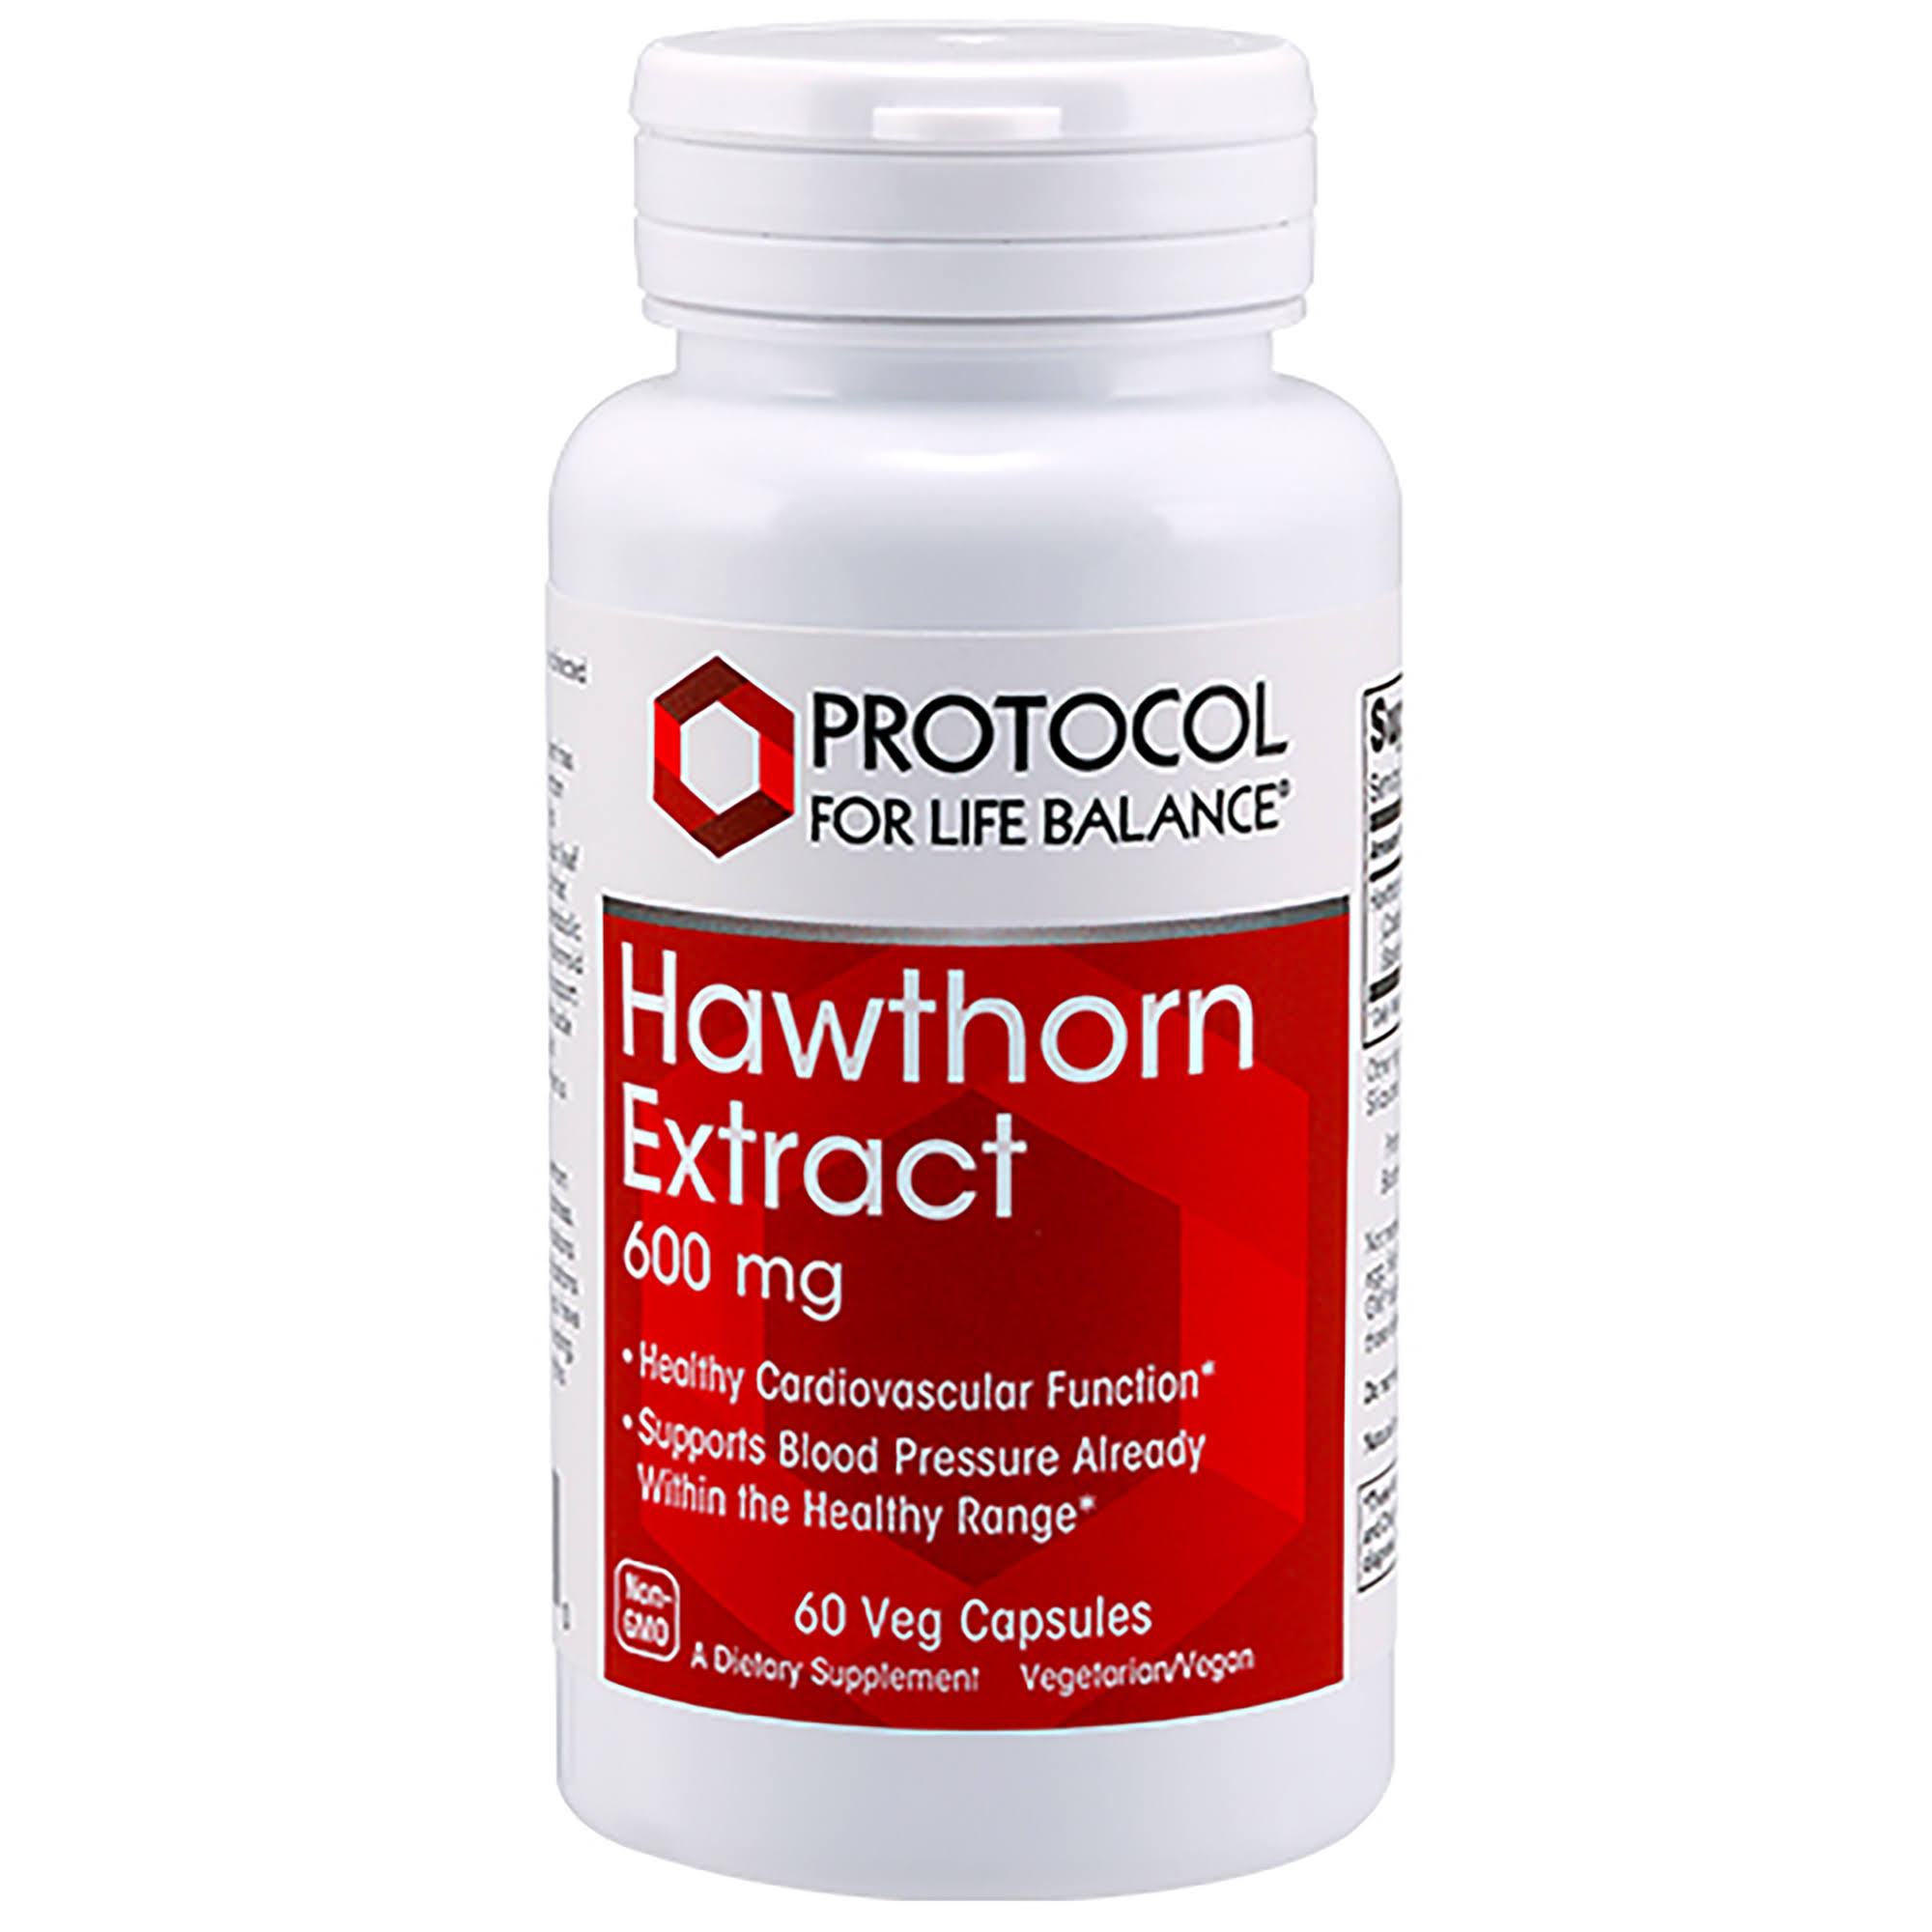 Protocol For Life Balance Hawthorn Extract - 600 MG - 60 Veg Capsules